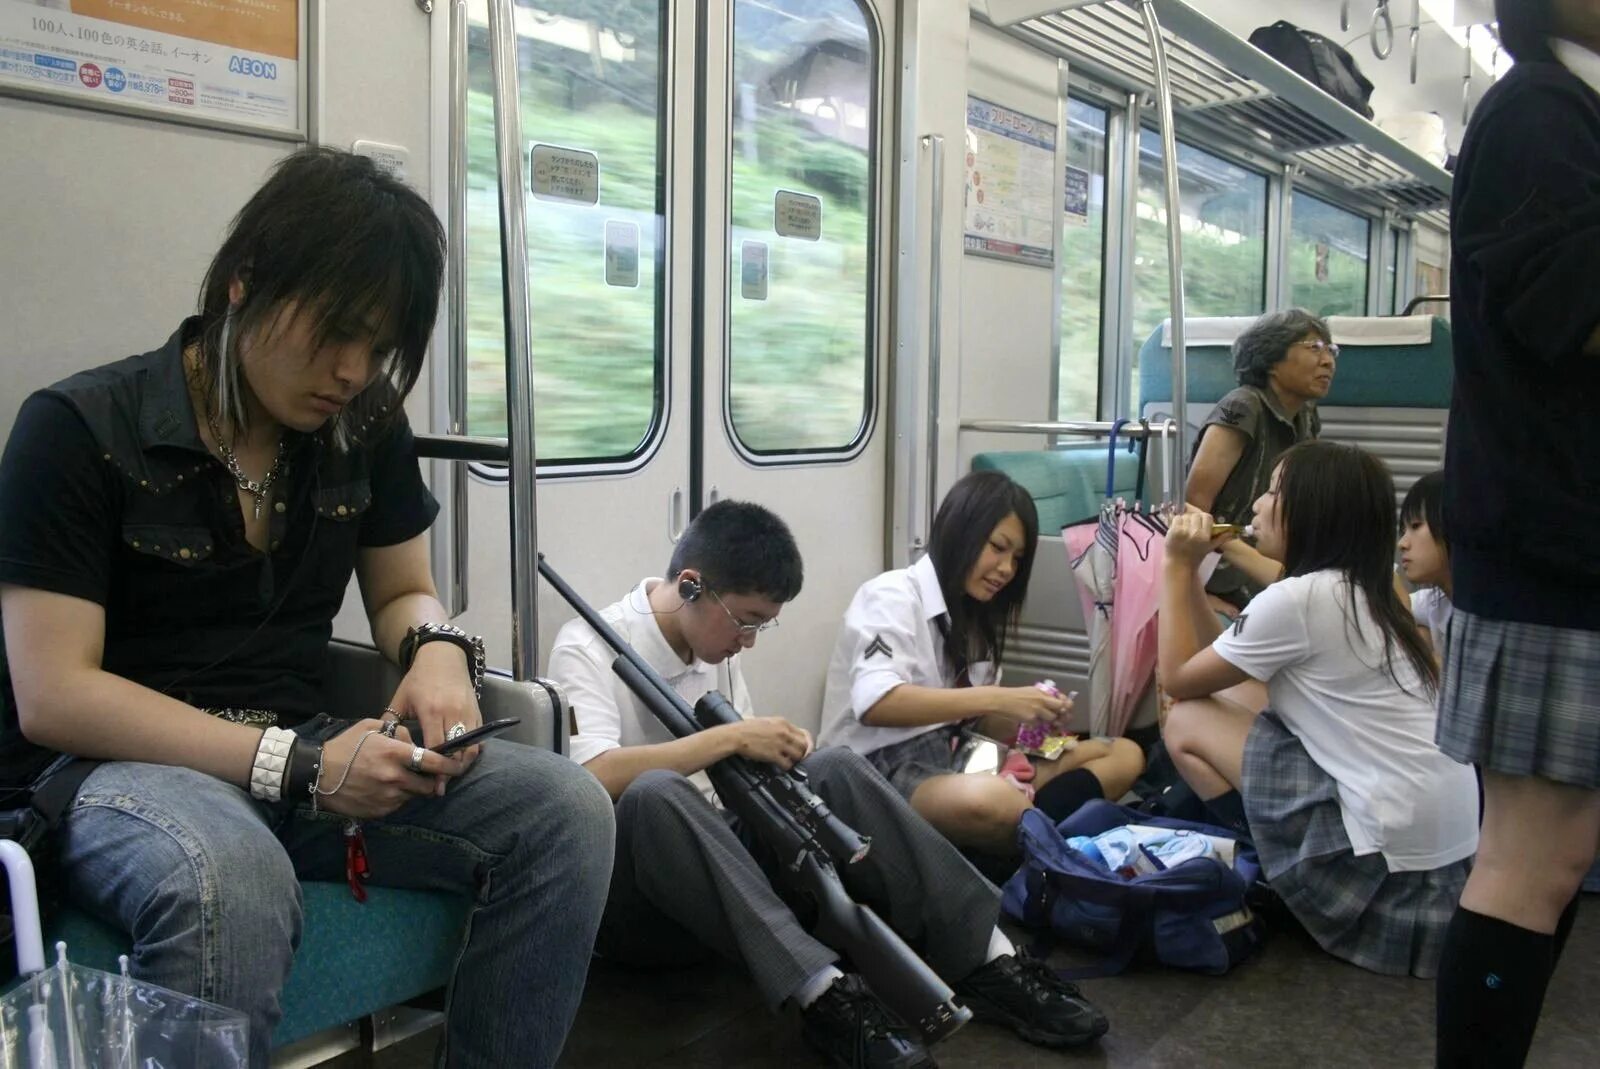 Японцы в транспорте. Японский общественный транспорт. Японские девушки в общественном транспорте. Японское метро. Японки в метро без цензуры